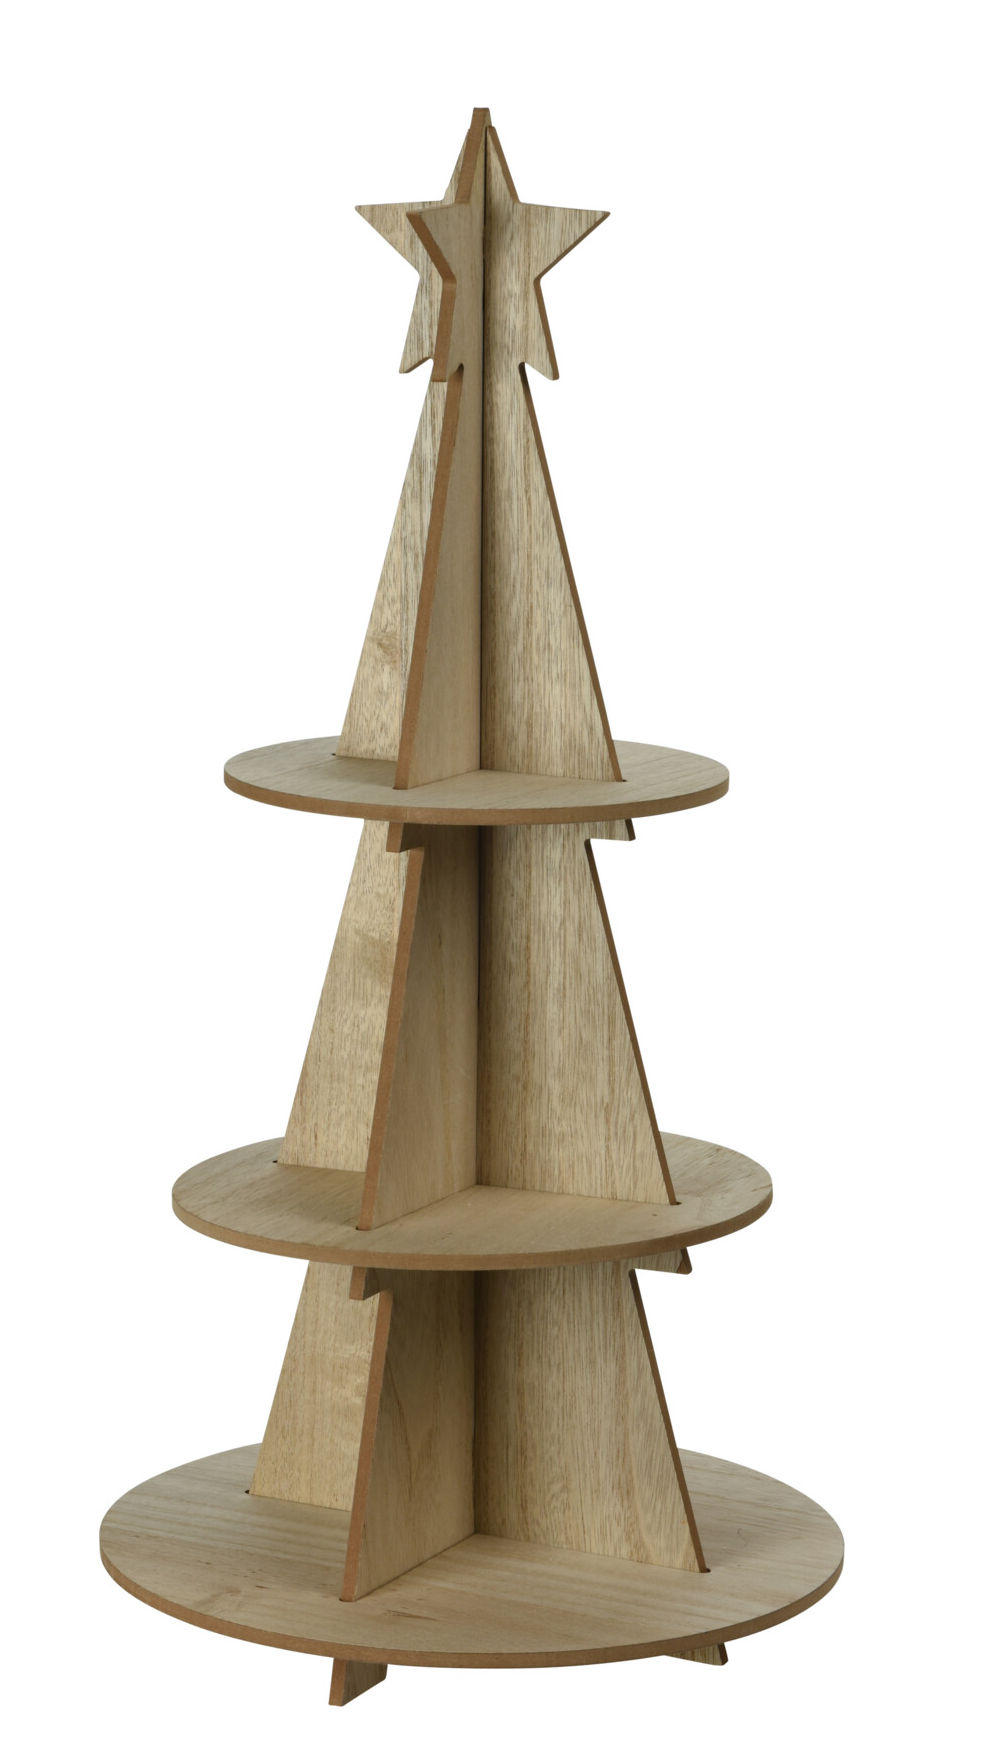 XXL Holz Weihnachtsbaum Pyramide mit 3 Etagen - 60 x 29 cm - Weihnachts Deko Etagere mit Stern Spitze